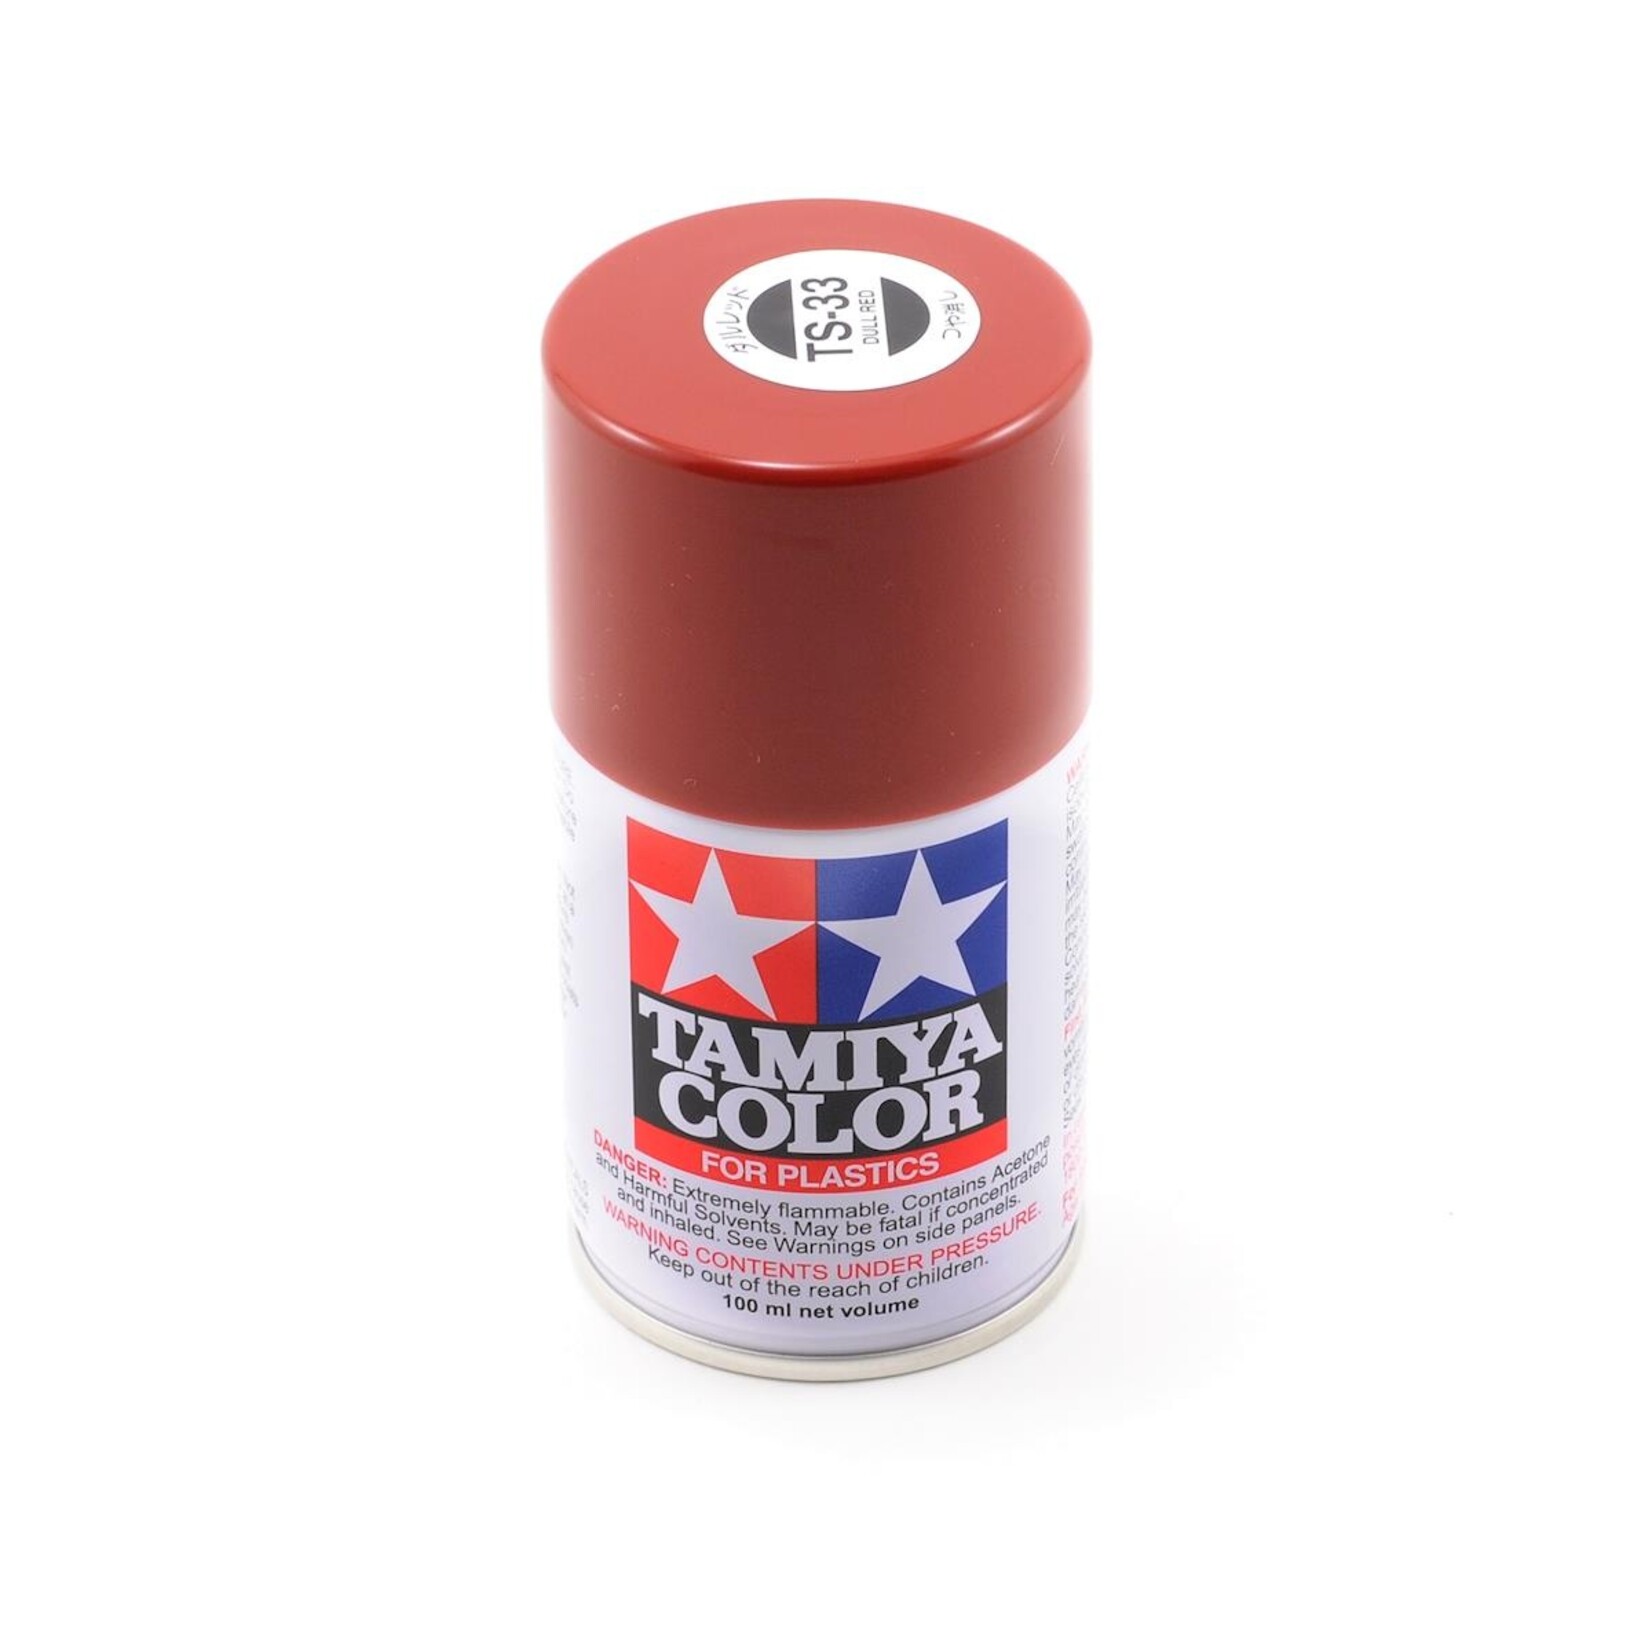 Tamiya Tamiya TS-33 Dull Red Lacquer Spray Paint (100ml) #85033